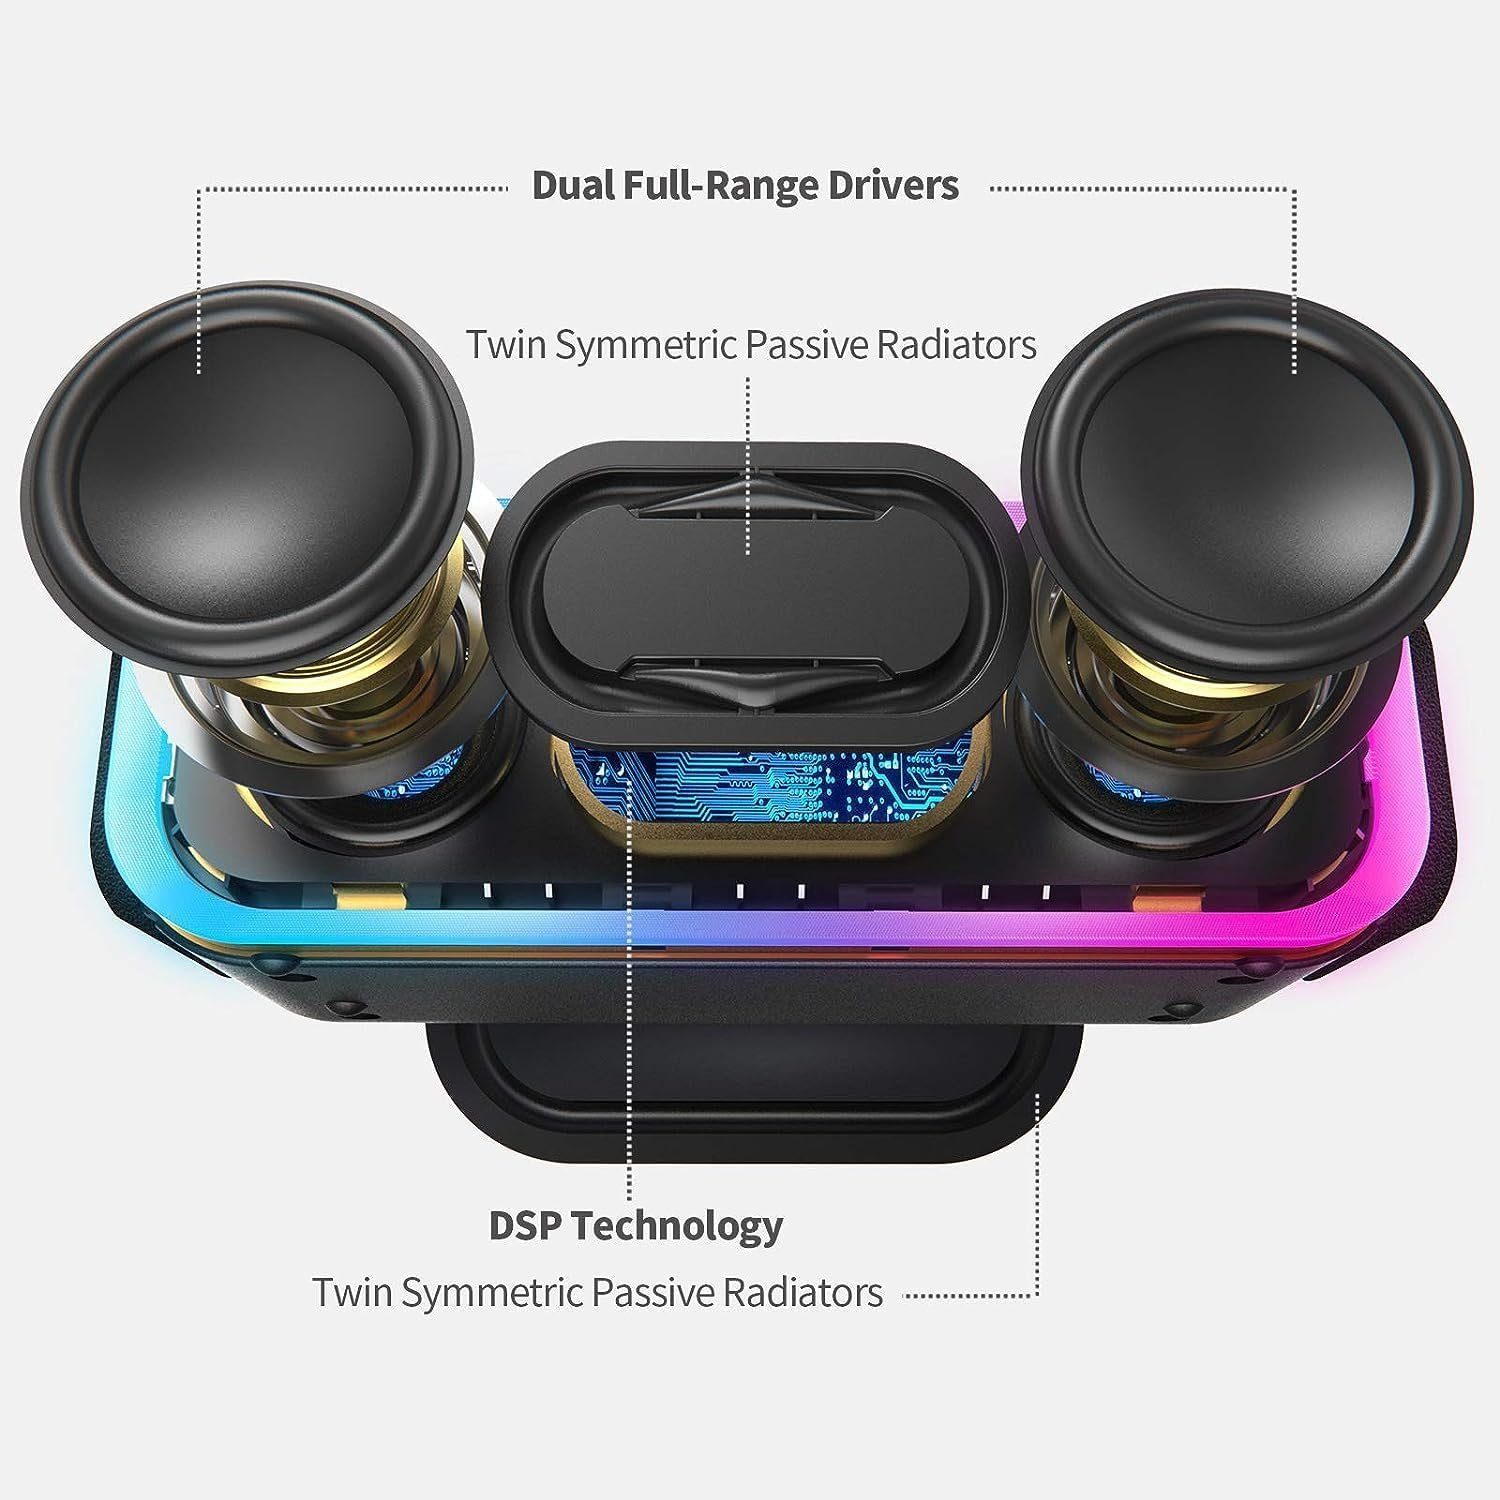 Wasserdicht, Std) Stereo-Pairing, Bluetooth Lichtern, 15 Wireless 24 Musikbox Lautsprecher IPX5 (Bluetooth, W, DOSS Stereo